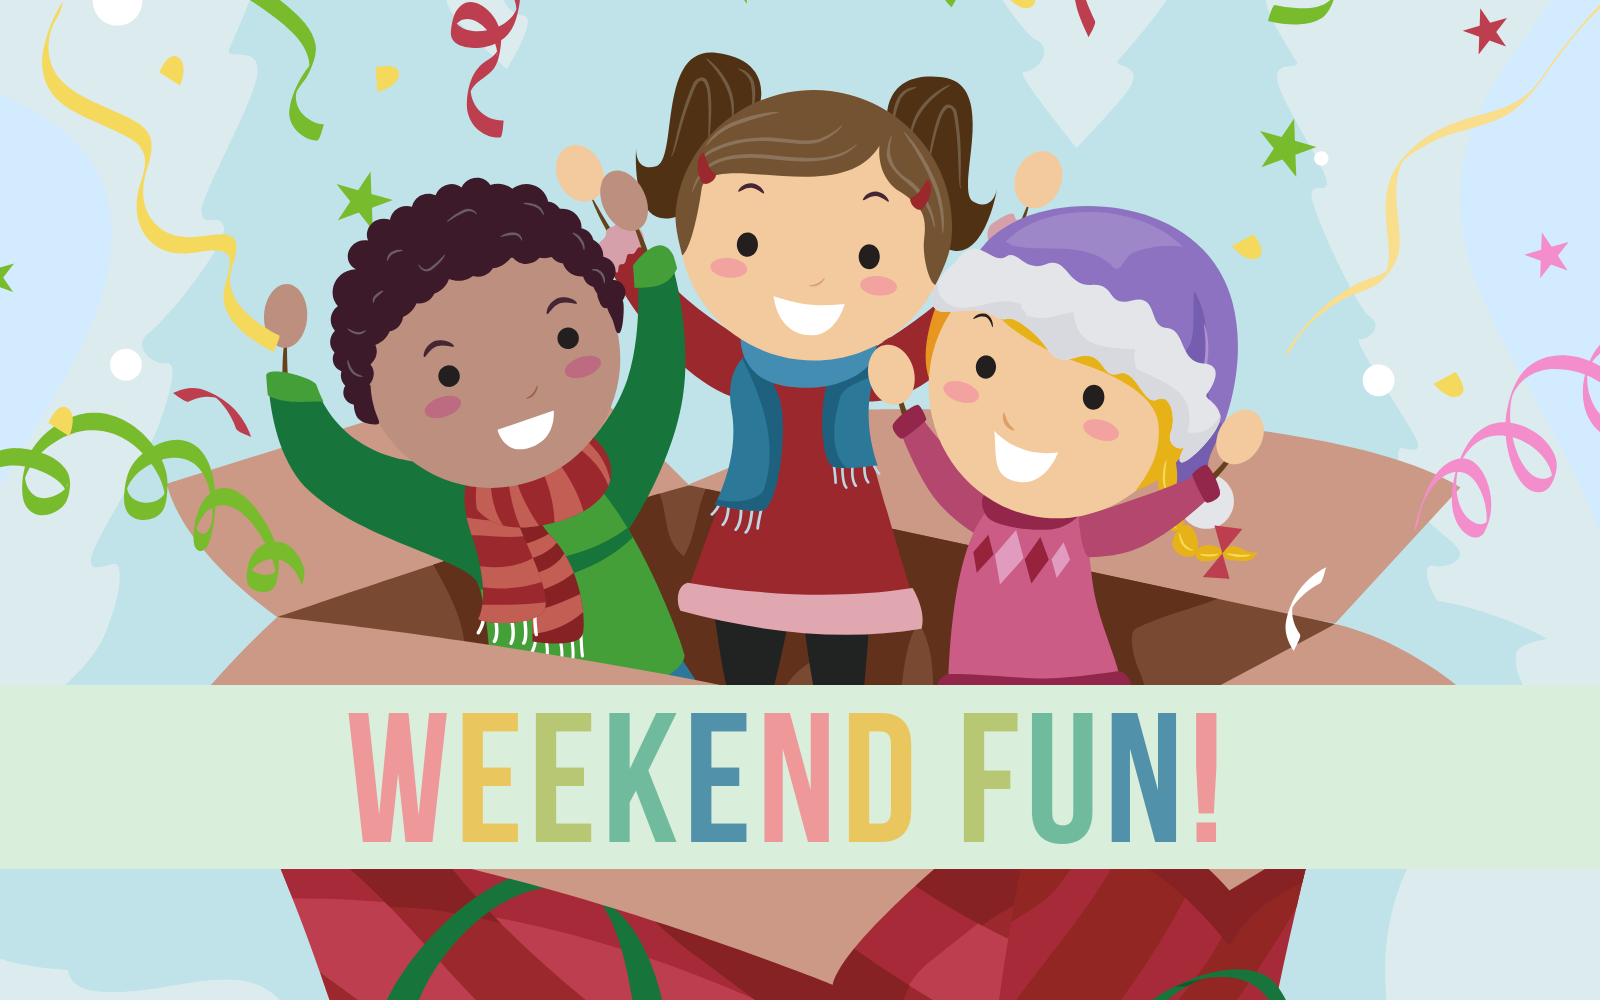 Friends family weekend. Weekend fun. Weekend картинка для детей. Картинки weekend семьи. Fun weekends.